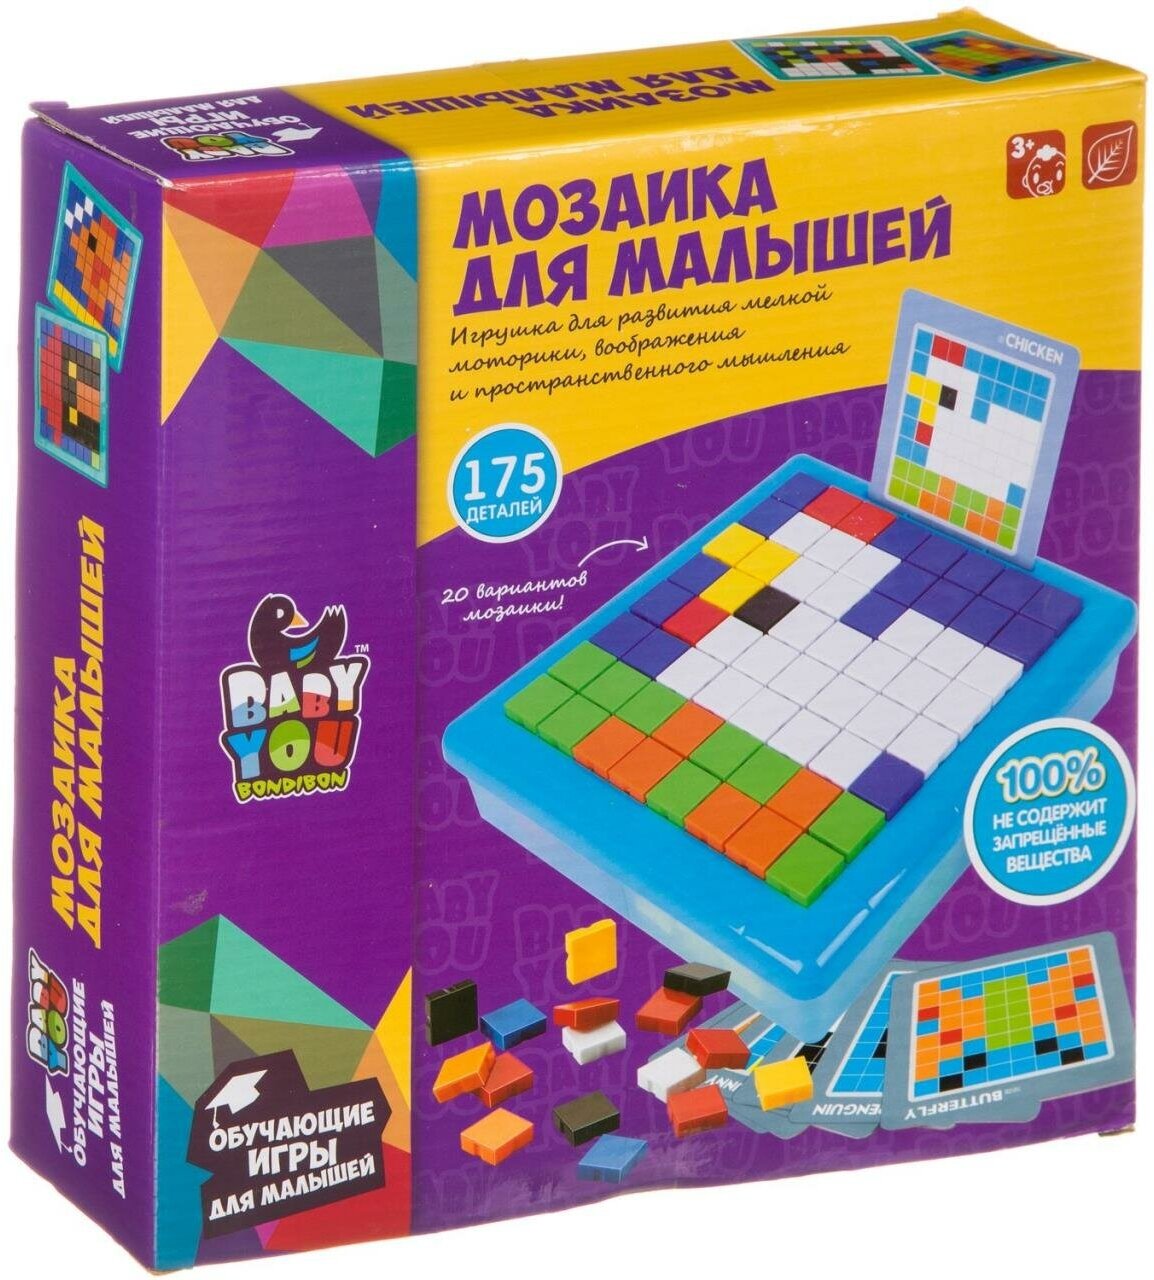 Мозаика для малышей Bondibon, пиксельная, 20 карточек, 175 дет, BOX